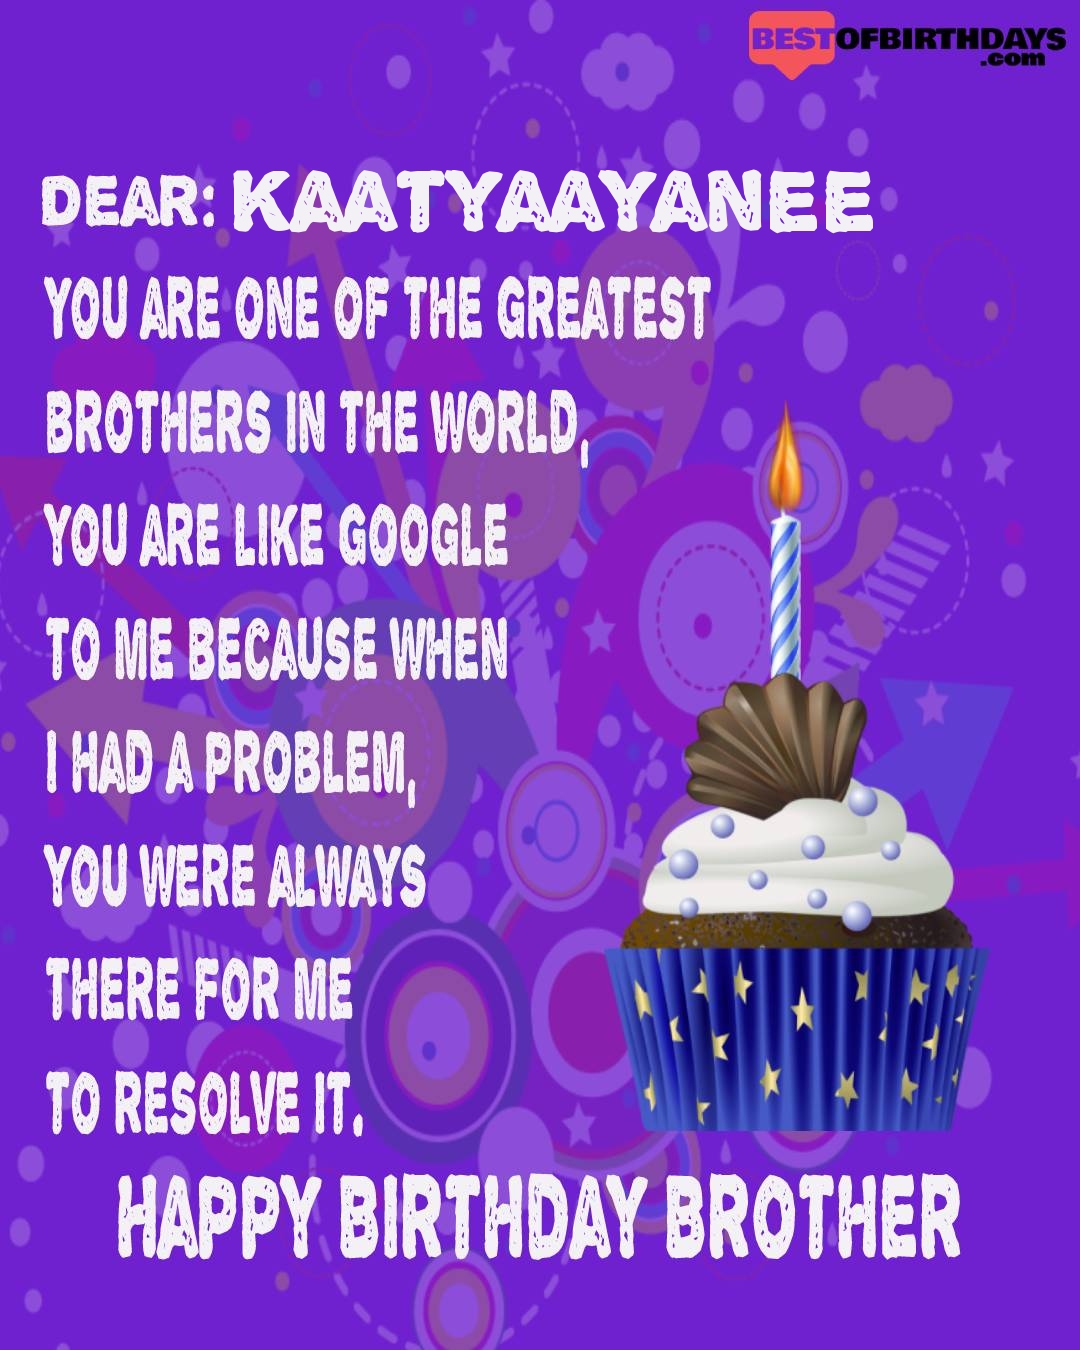 Happy birthday kaatyaayanee bhai brother bro